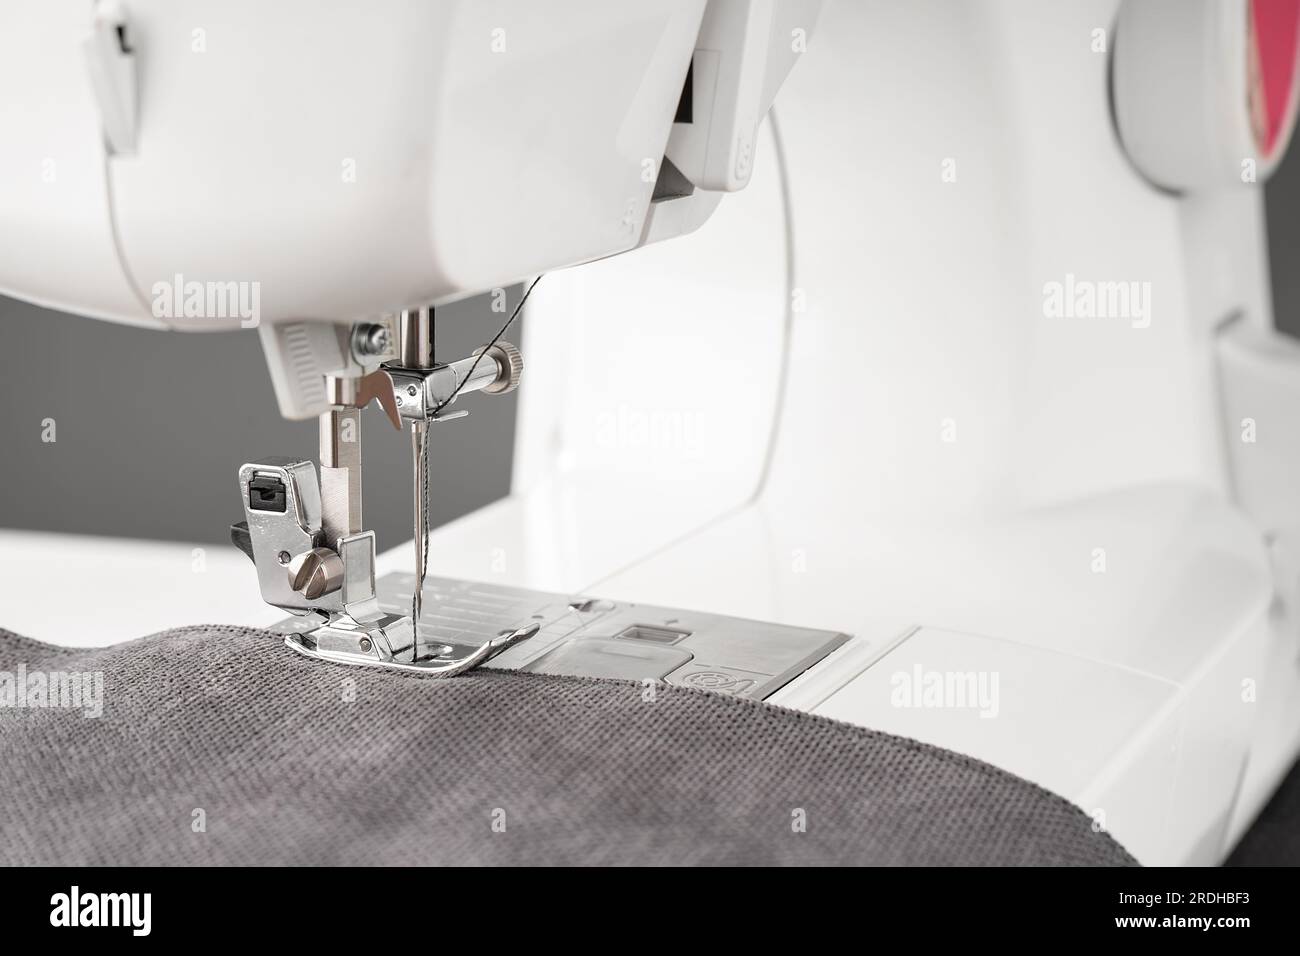 Máquina de coser moderna con tela gris y. Proceso de costura ropa, cortinas, tapicería. Negocio, hobby, hecho a mano, cero residuos, reciclaje, reparar con Foto de stock